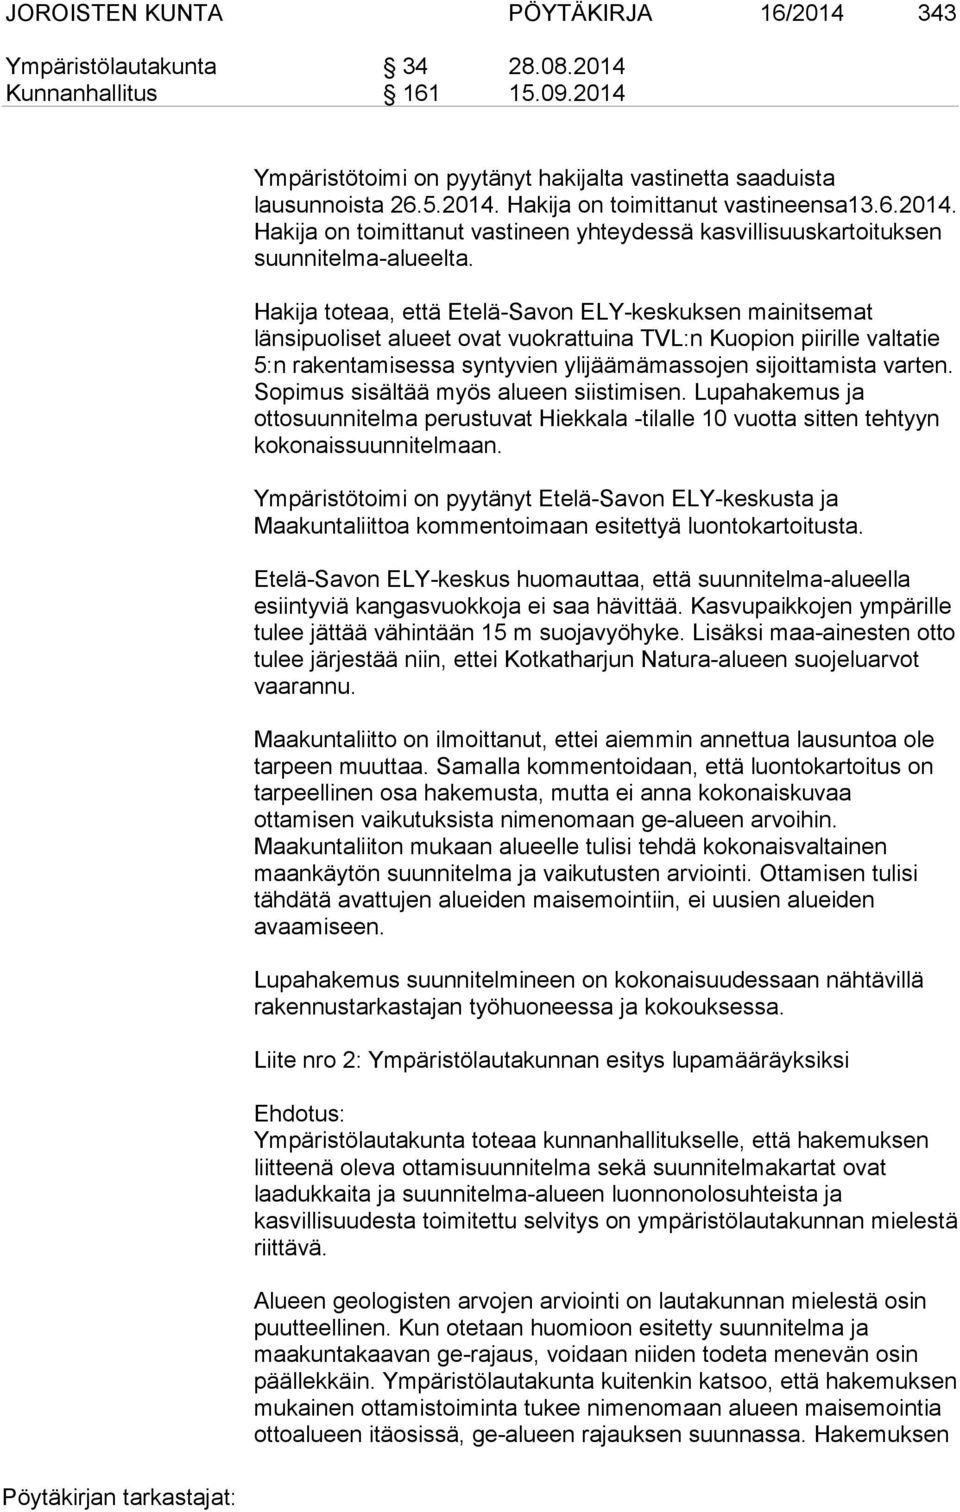 Hakija toteaa, että Etelä-Savon ELY-keskuksen mainitsemat länsipuoliset alueet ovat vuokrattuina TVL:n Kuopion piirille valtatie 5:n rakentamisessa syntyvien ylijäämämassojen sijoittamista varten.